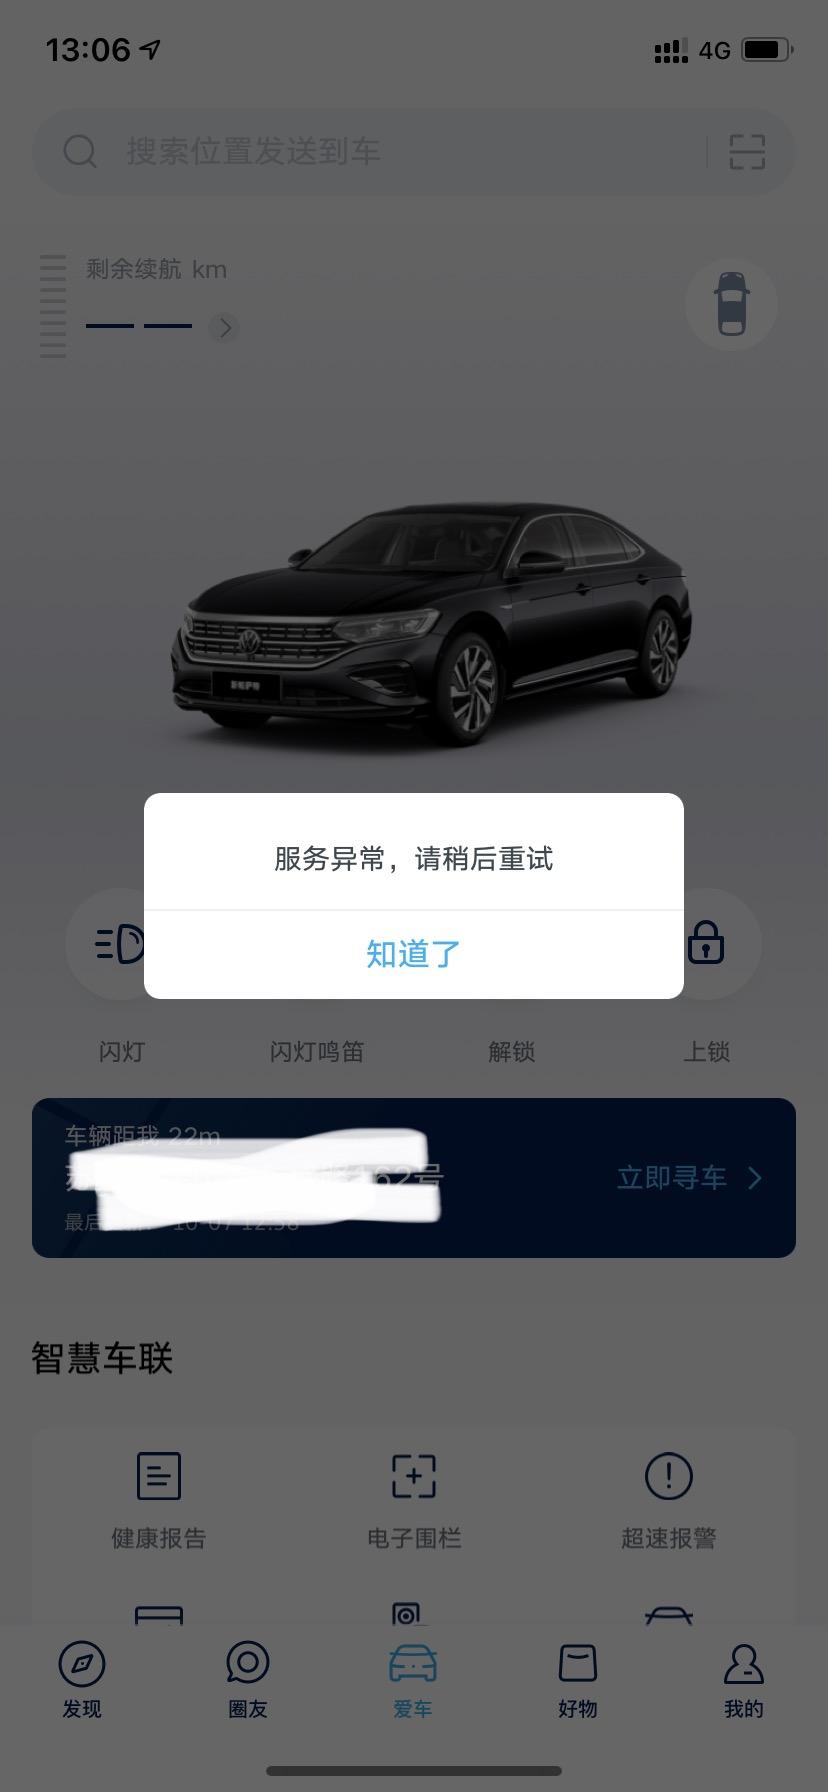 本田雅阁 上汽大众app，位置好像可以用，但是车辆信息没有用，显示服务异常，什么情况啊?